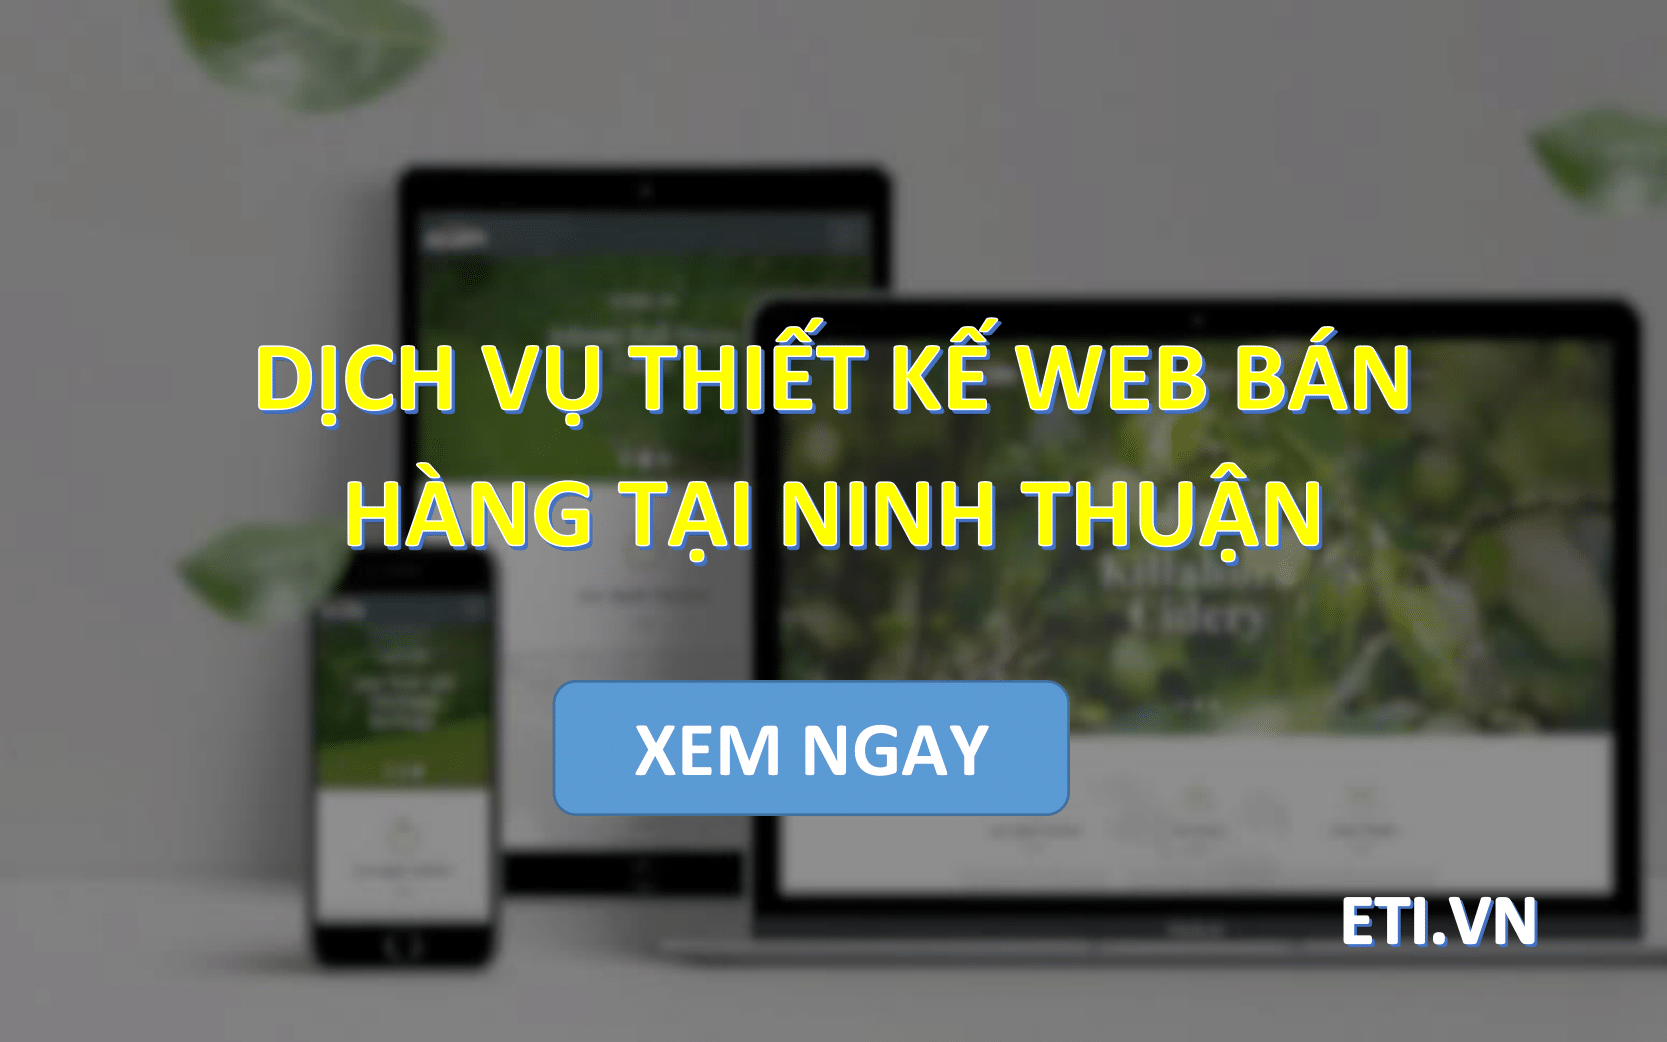 Dịch vụ Thiết kế web bán hàng tại Ninh Thuận